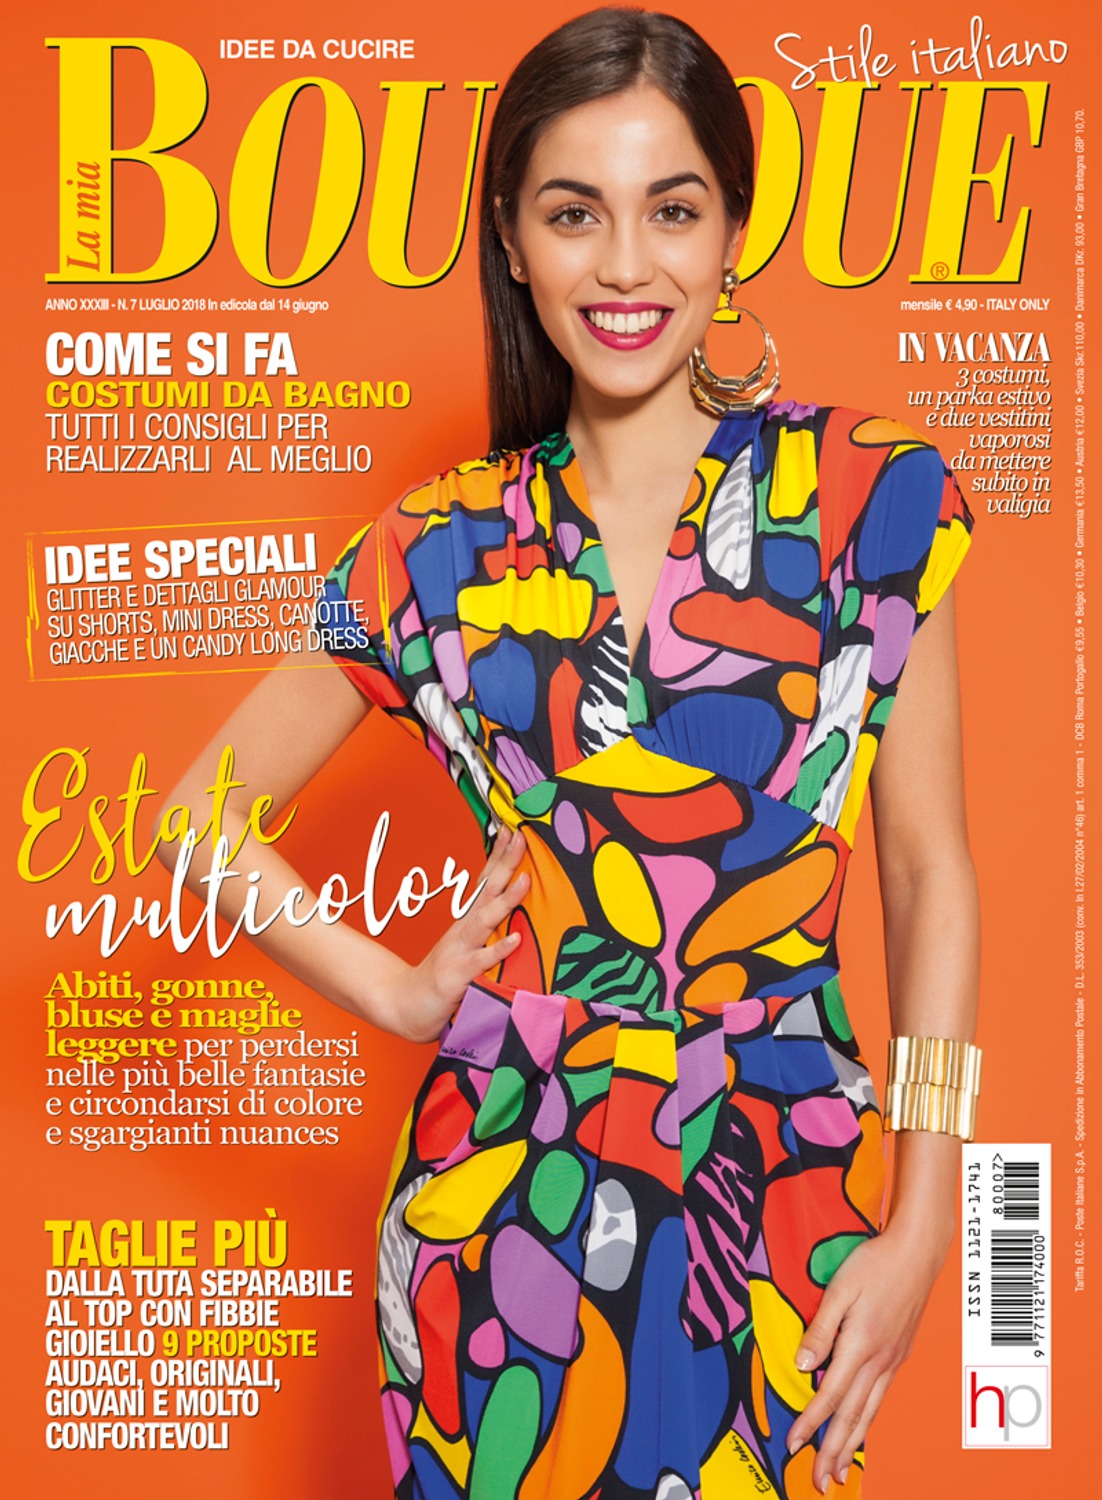 La magazine. La Mia Boutique журнал 2020. Журнал бутик 2019. La Mia Boutique 2023. Анонсы журналов бутик.